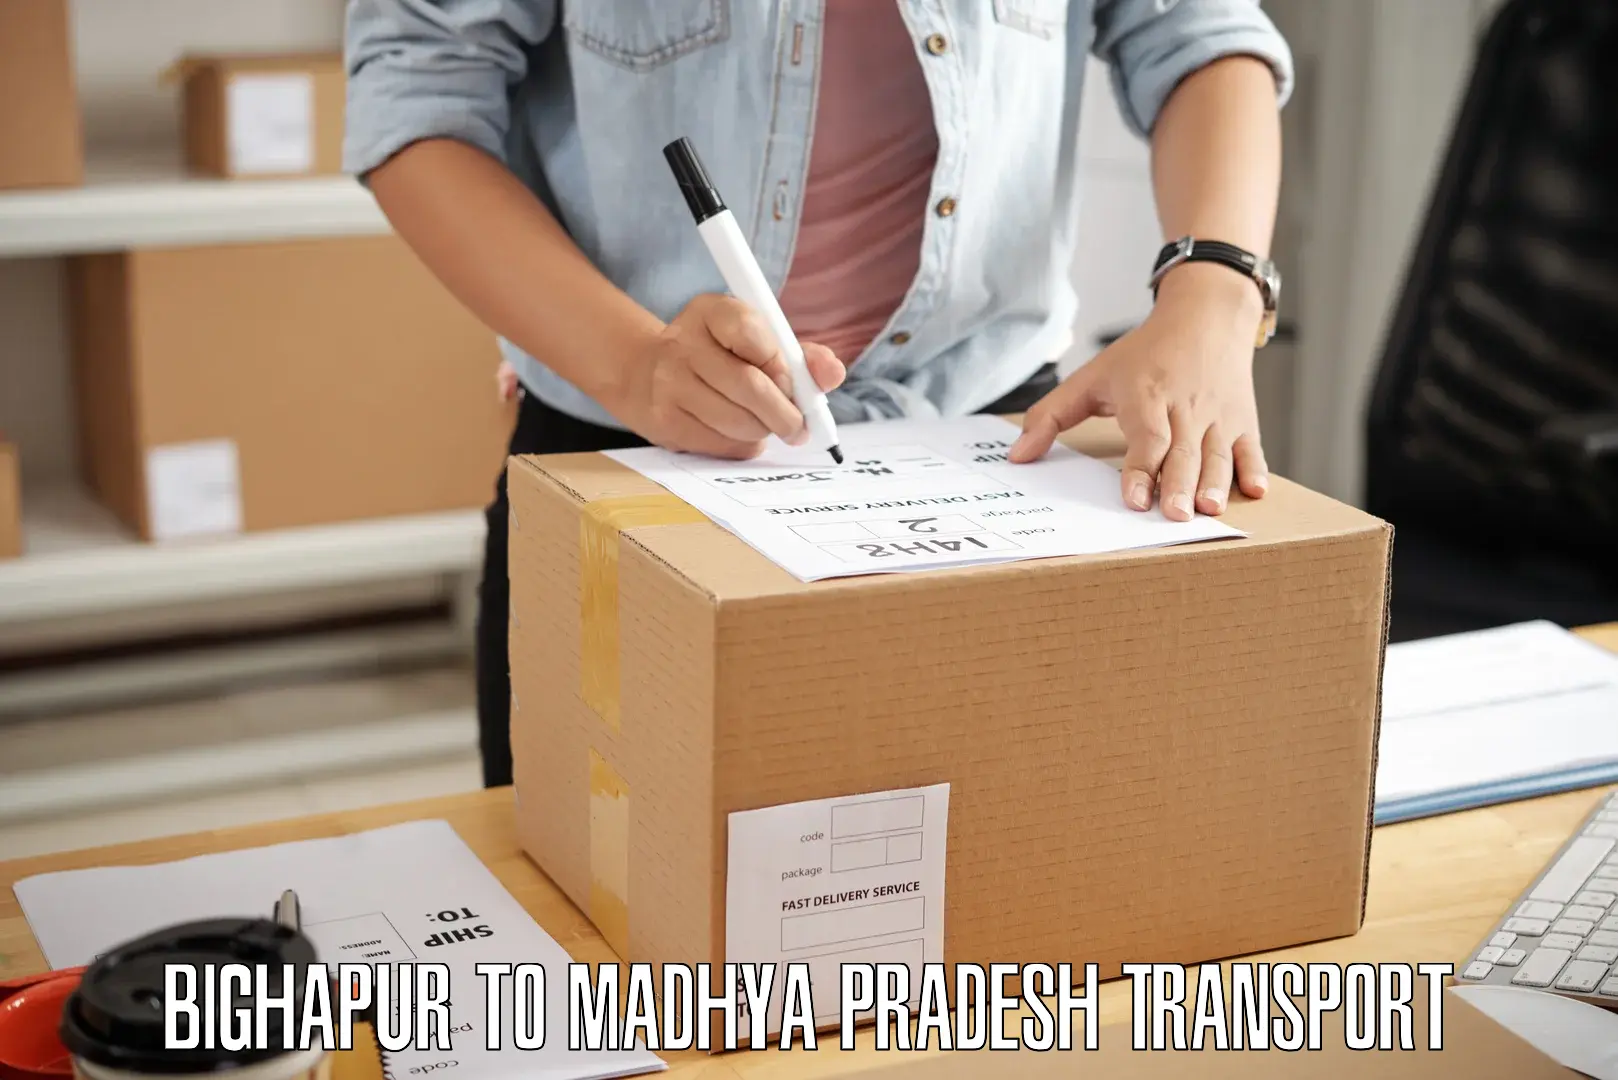 Daily parcel service transport Bighapur to Begumganj